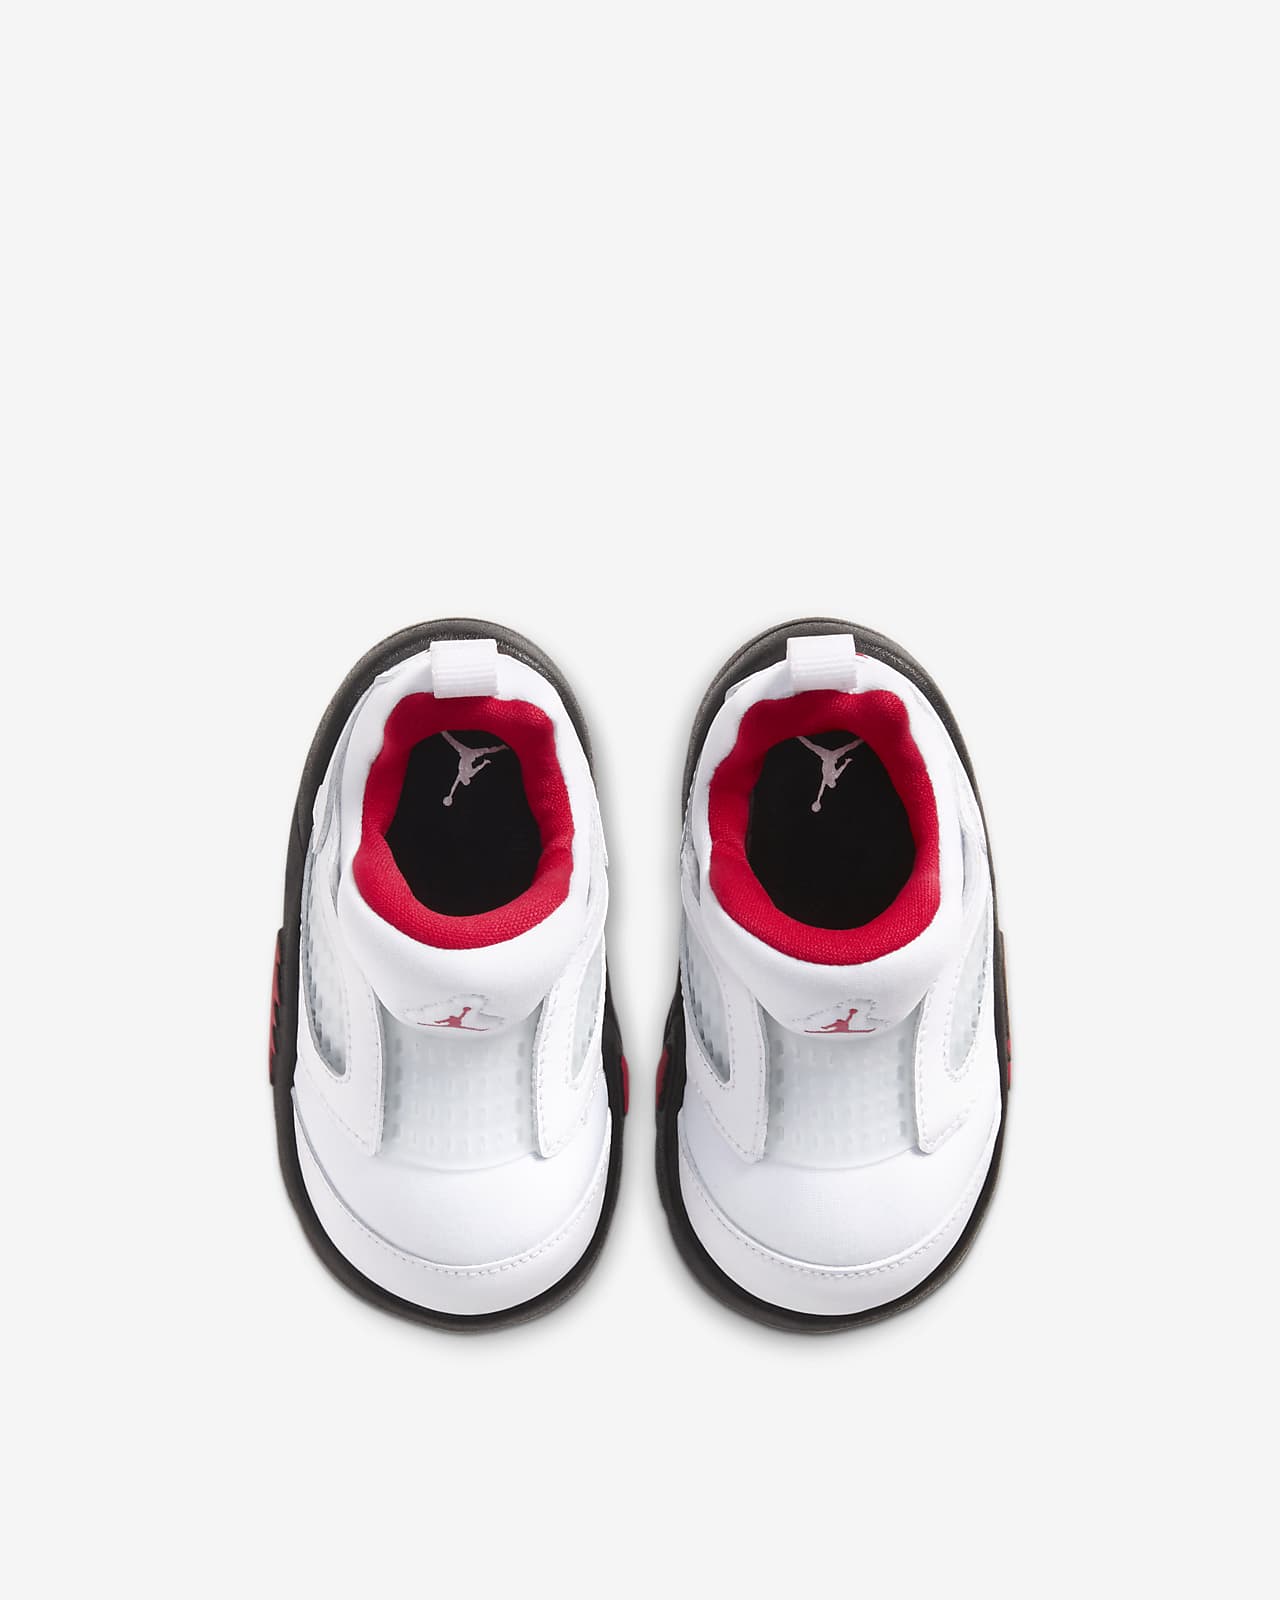 jordan 5 baby shoes